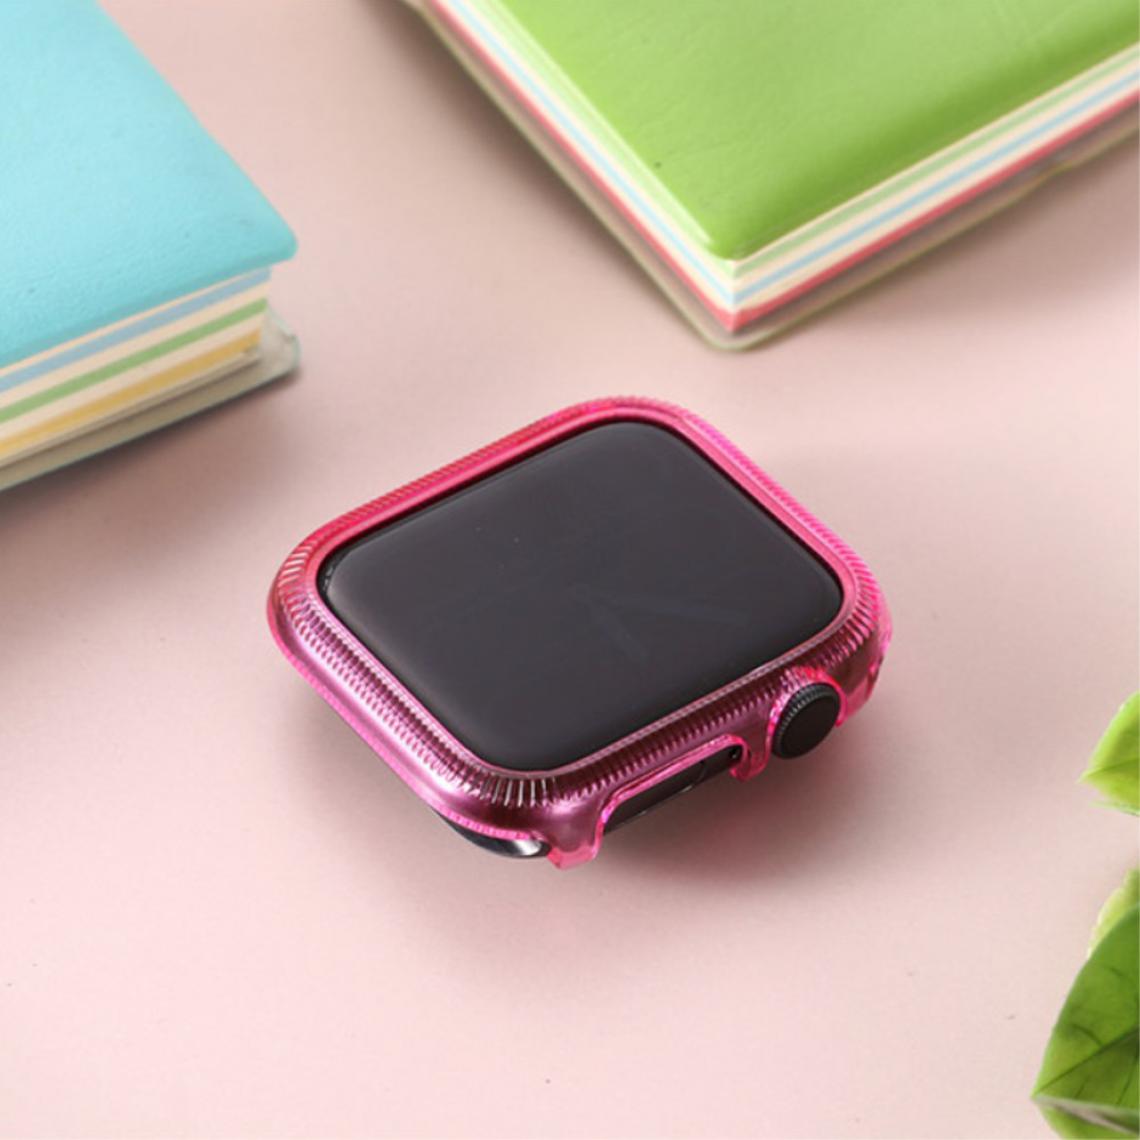 Other - Coque en TPU cadre coloré rose pour votre Apple Watch Series 6/SE/5/4 44mm - Accessoires bracelet connecté